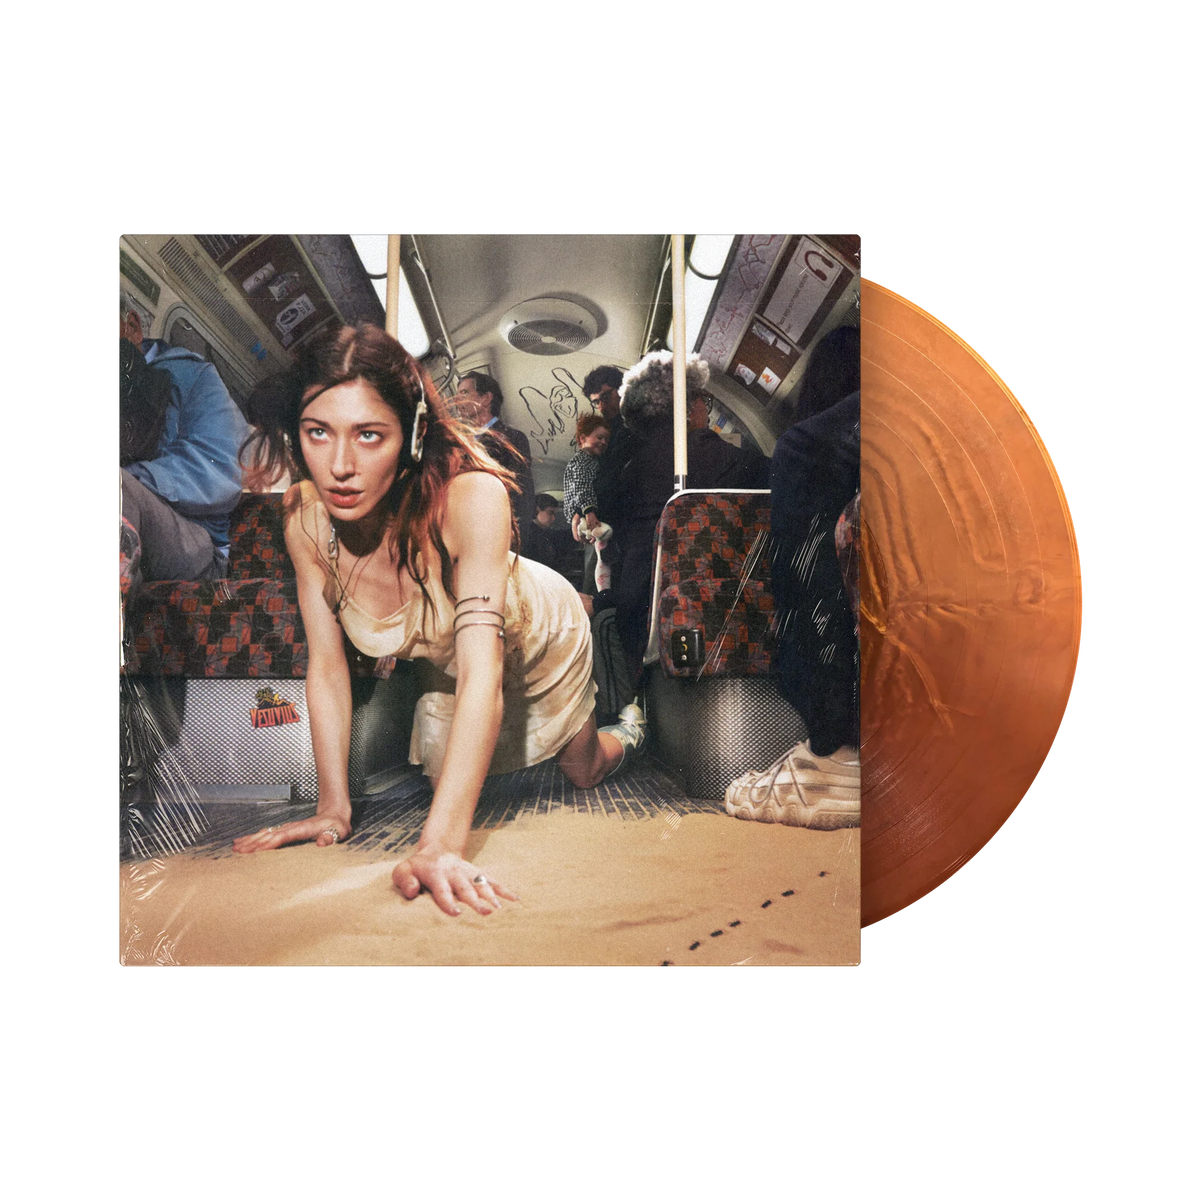 Caroline Polachek: Desire, I Want To Turn Into To You - Metallic Copper LP